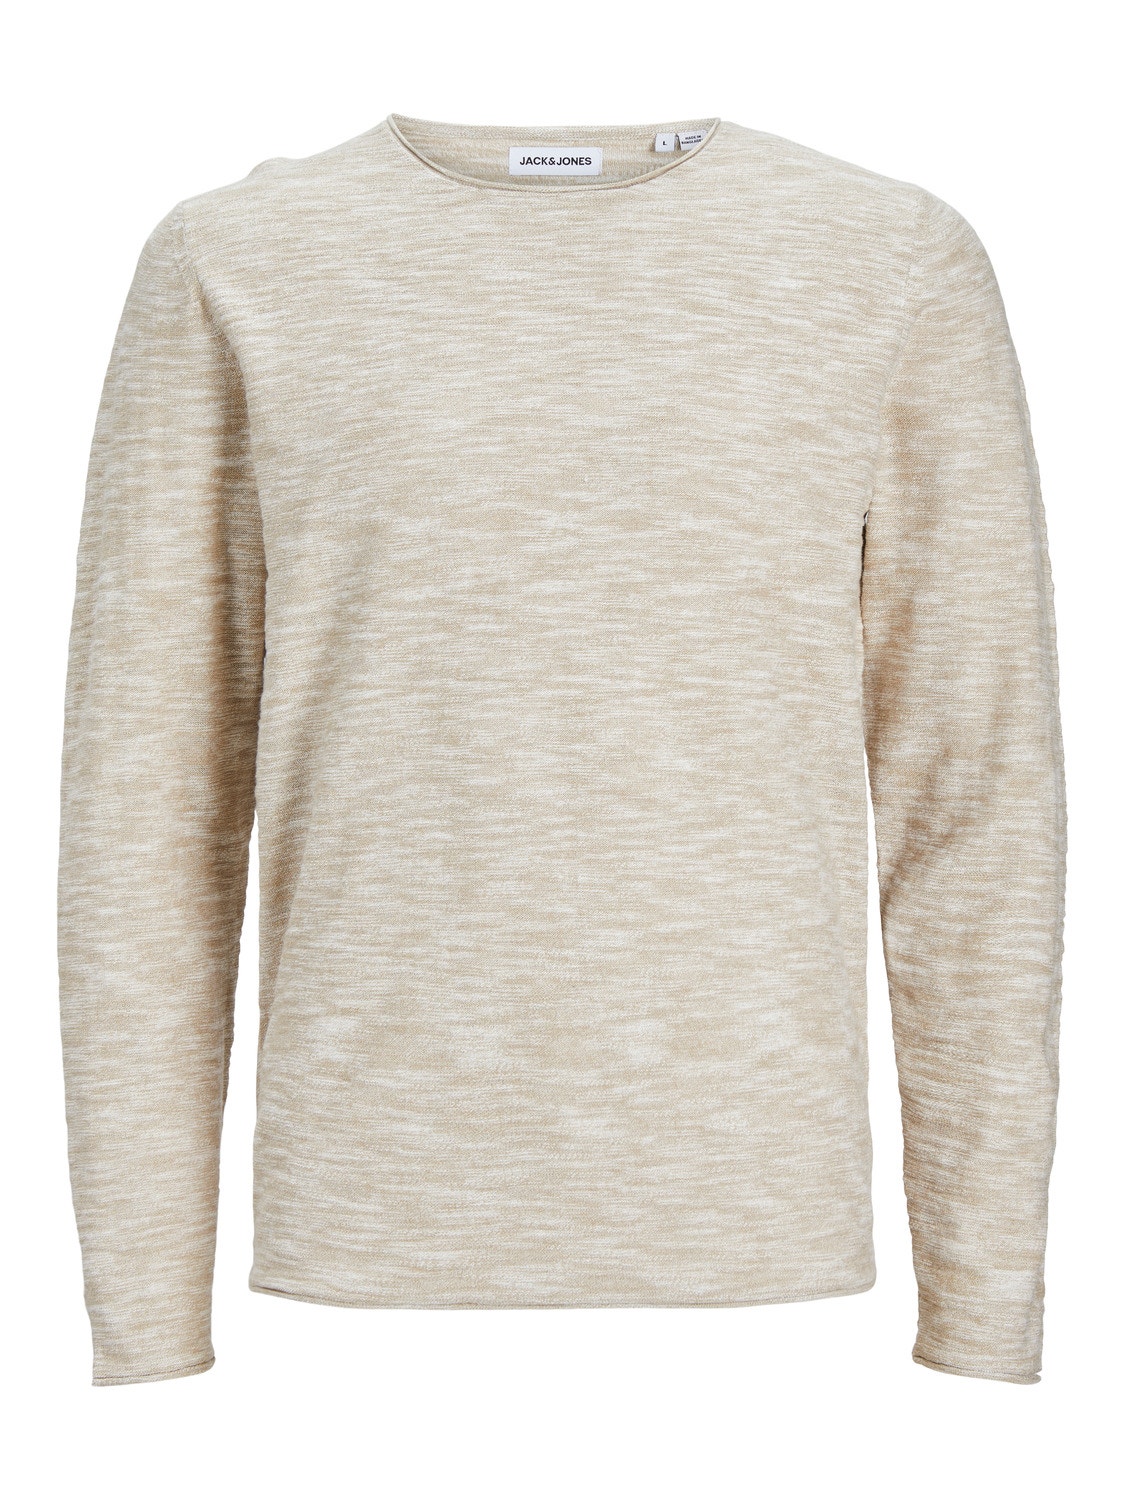 Jack & Jones Plus Size Sweter z dzianiny z okrągłym dekoltem -Crockery - 12254849